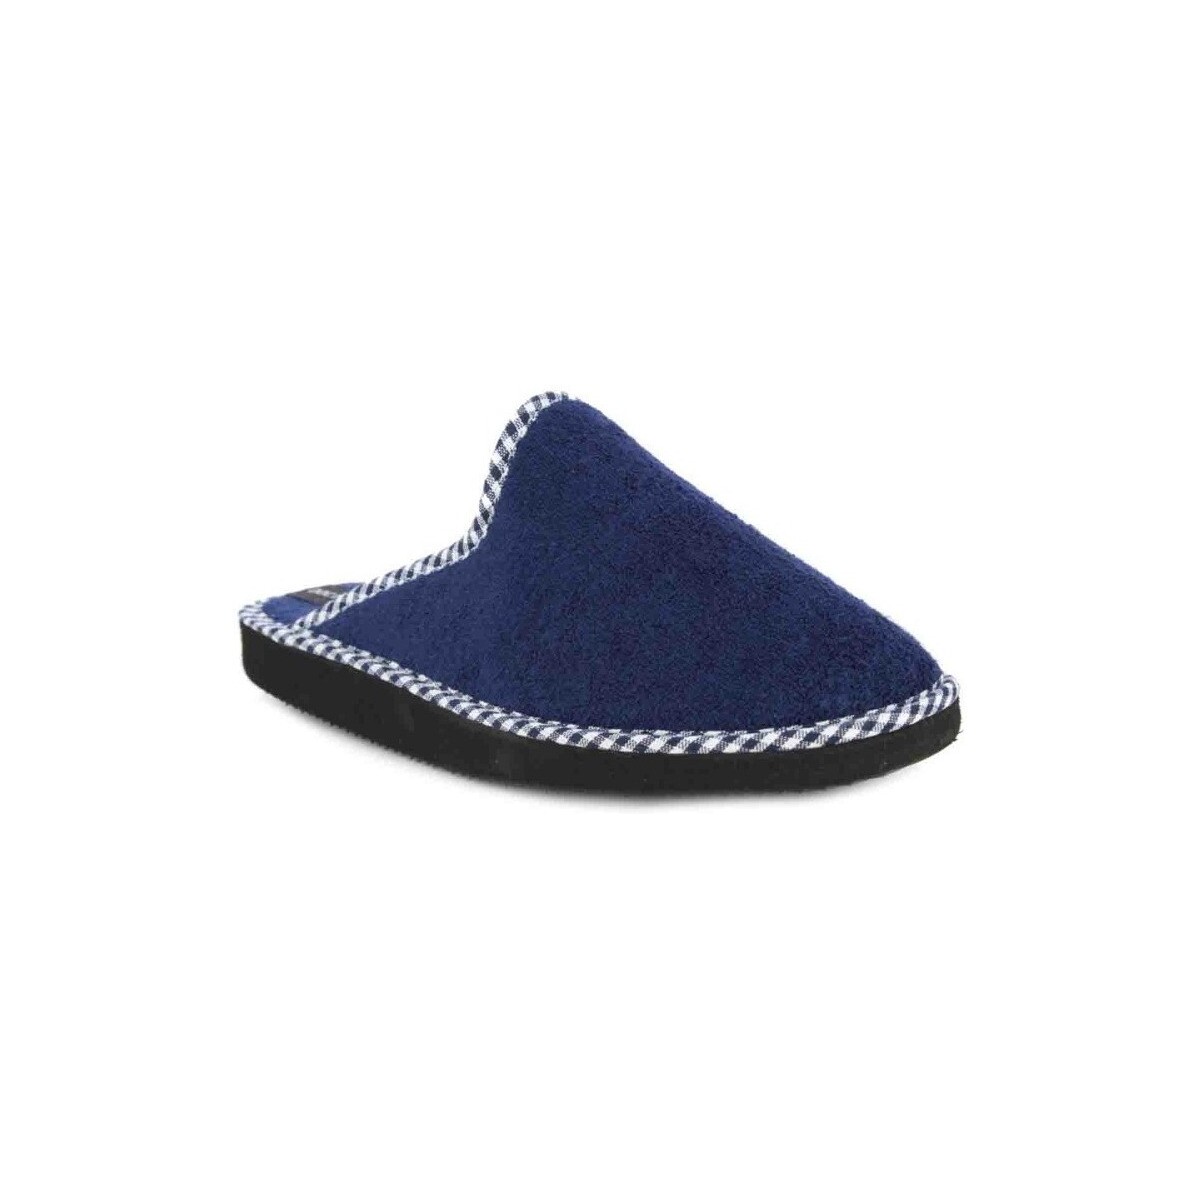 Zapatos Mujer Pantuflas Doctor Cutillas 24503 Azul